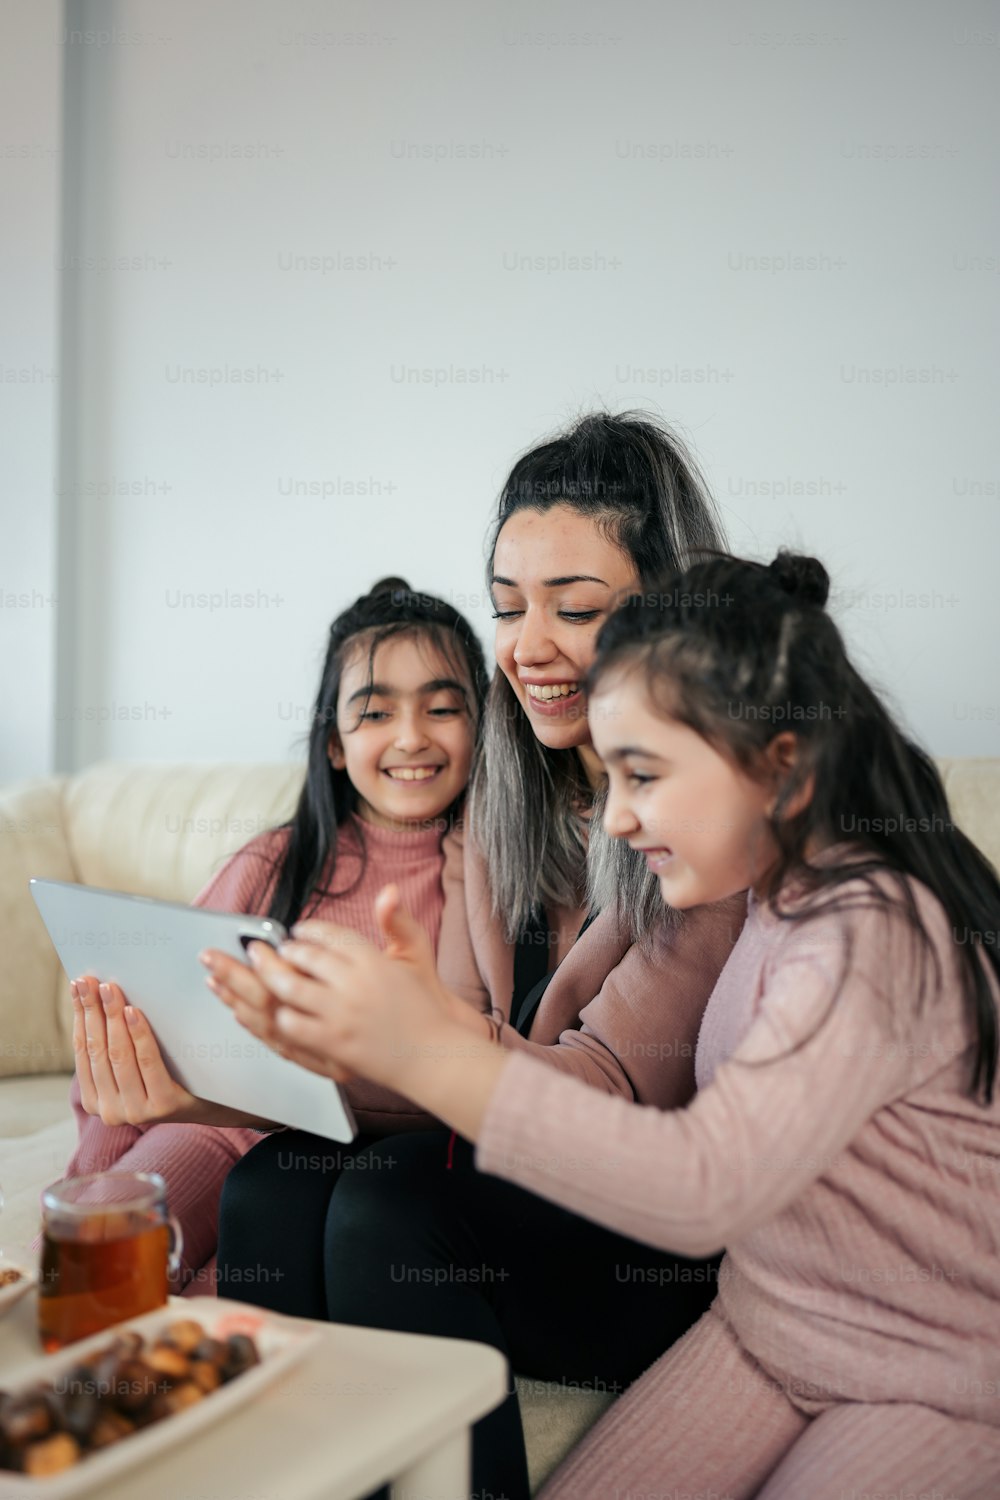 Una mujer y dos niñas sentadas en un sofá mirando una tableta